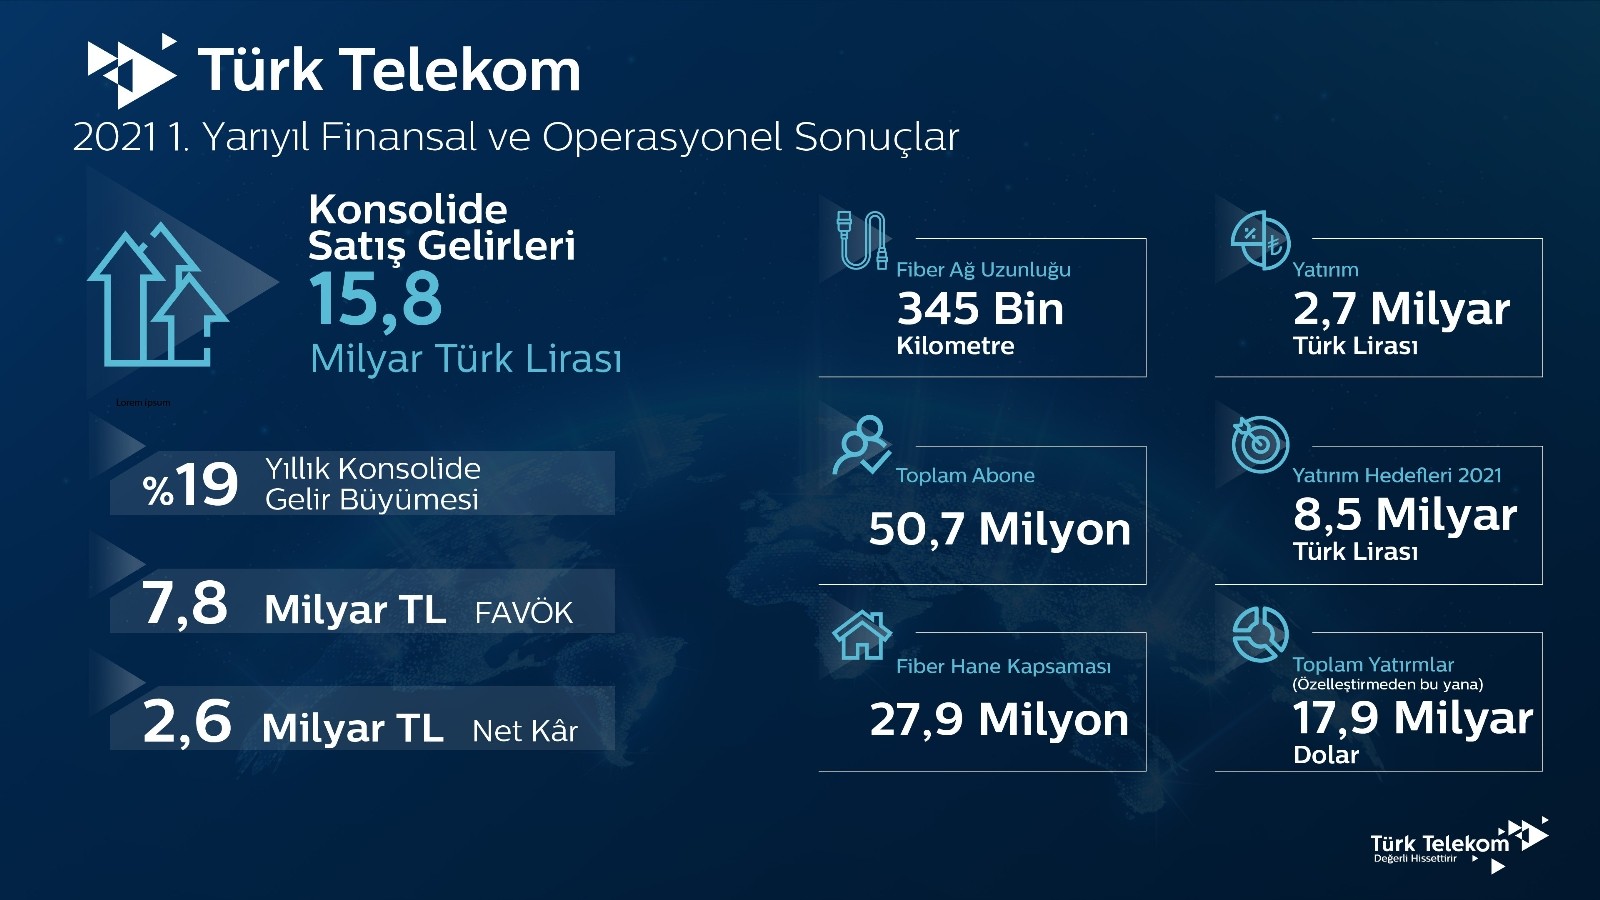 Türk Telekom, 2021’in ilk yarı finansal ve operasyonel sonuçlarını açıkladı